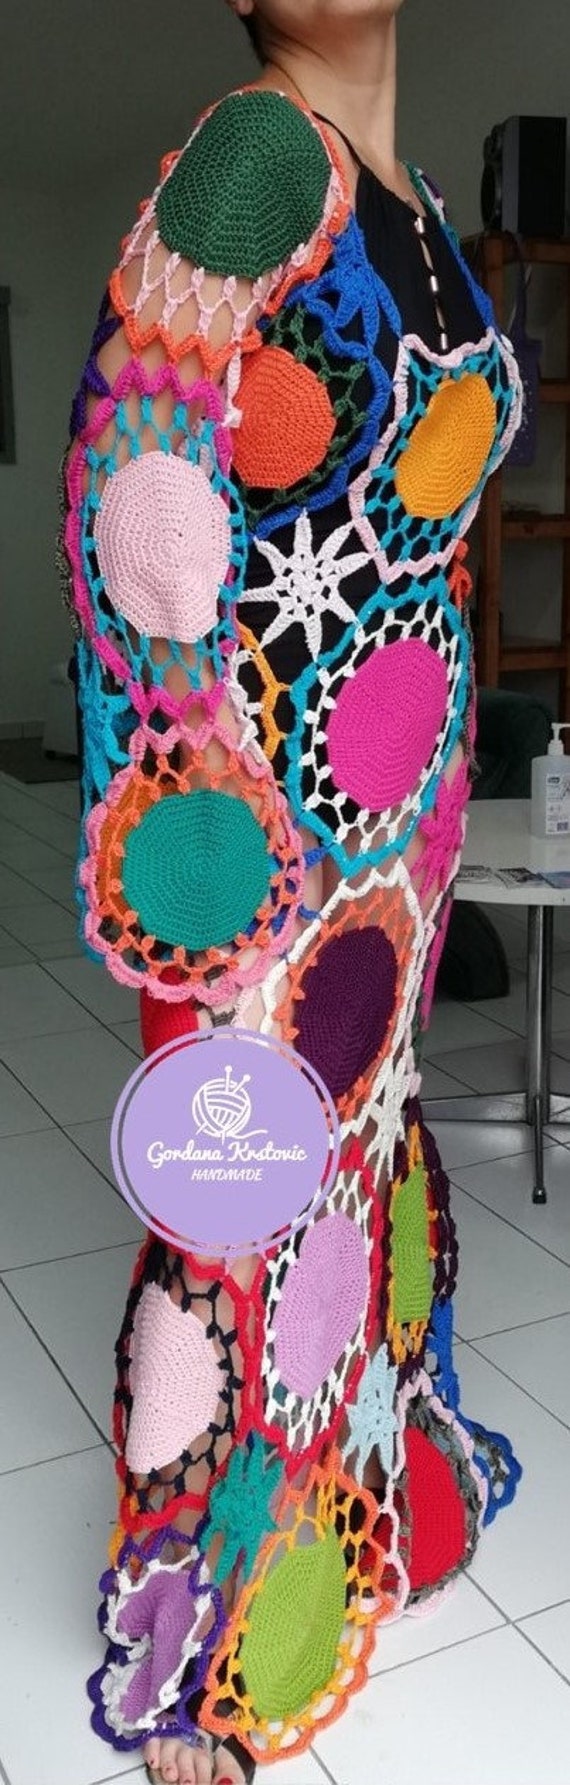 Summer knitwear Knitted boho beach dress Natural yarns hand knitted dress Woman midi lightweight dress See throught crochet